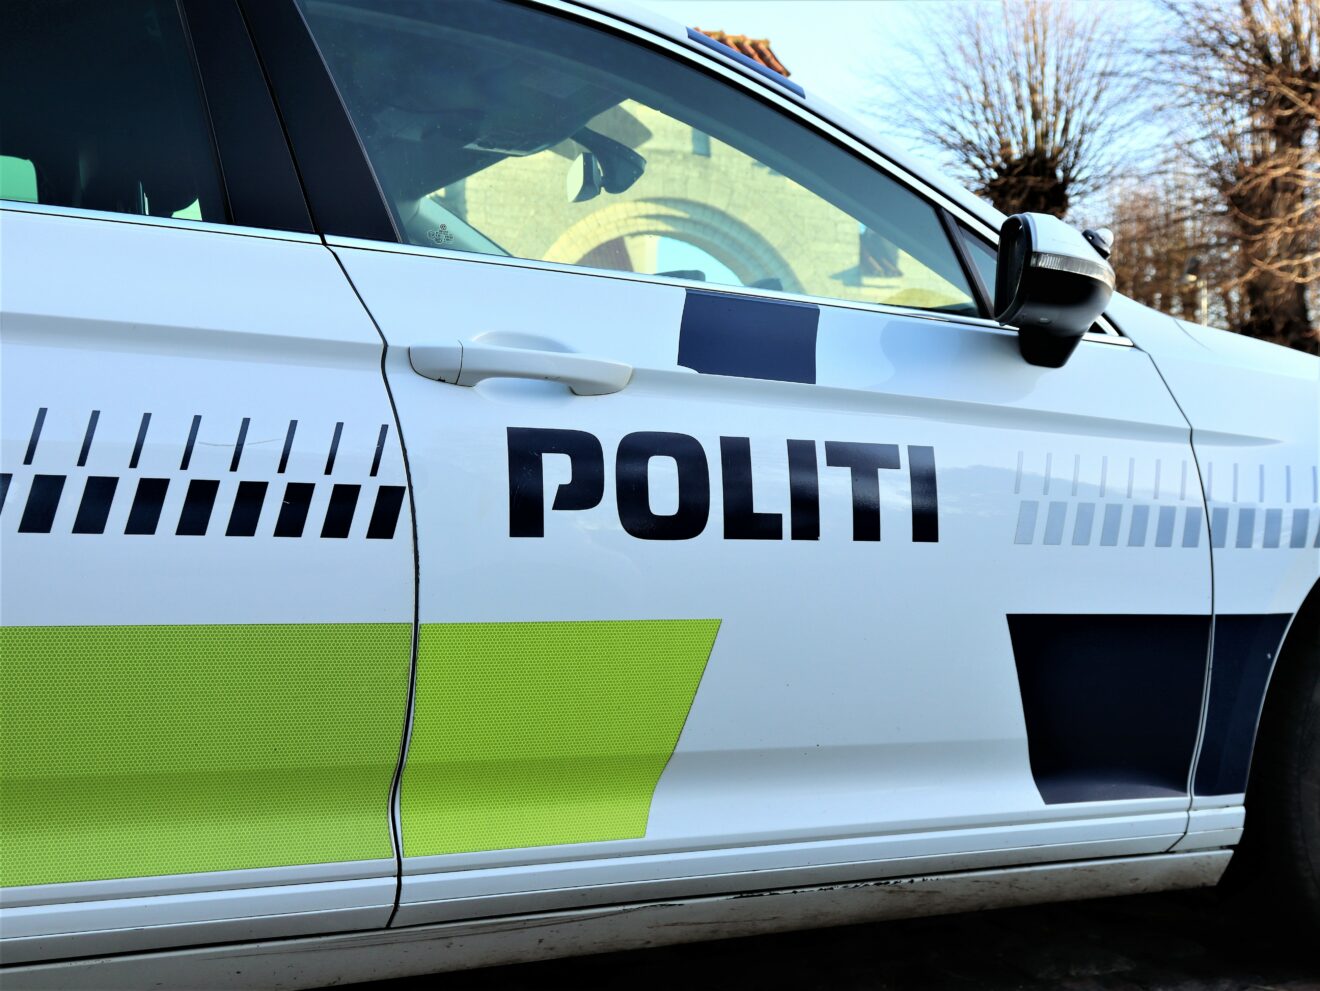 Sydøstjyllands Politi anholder tre formodede gerningsmænd efter røveri i Kolding